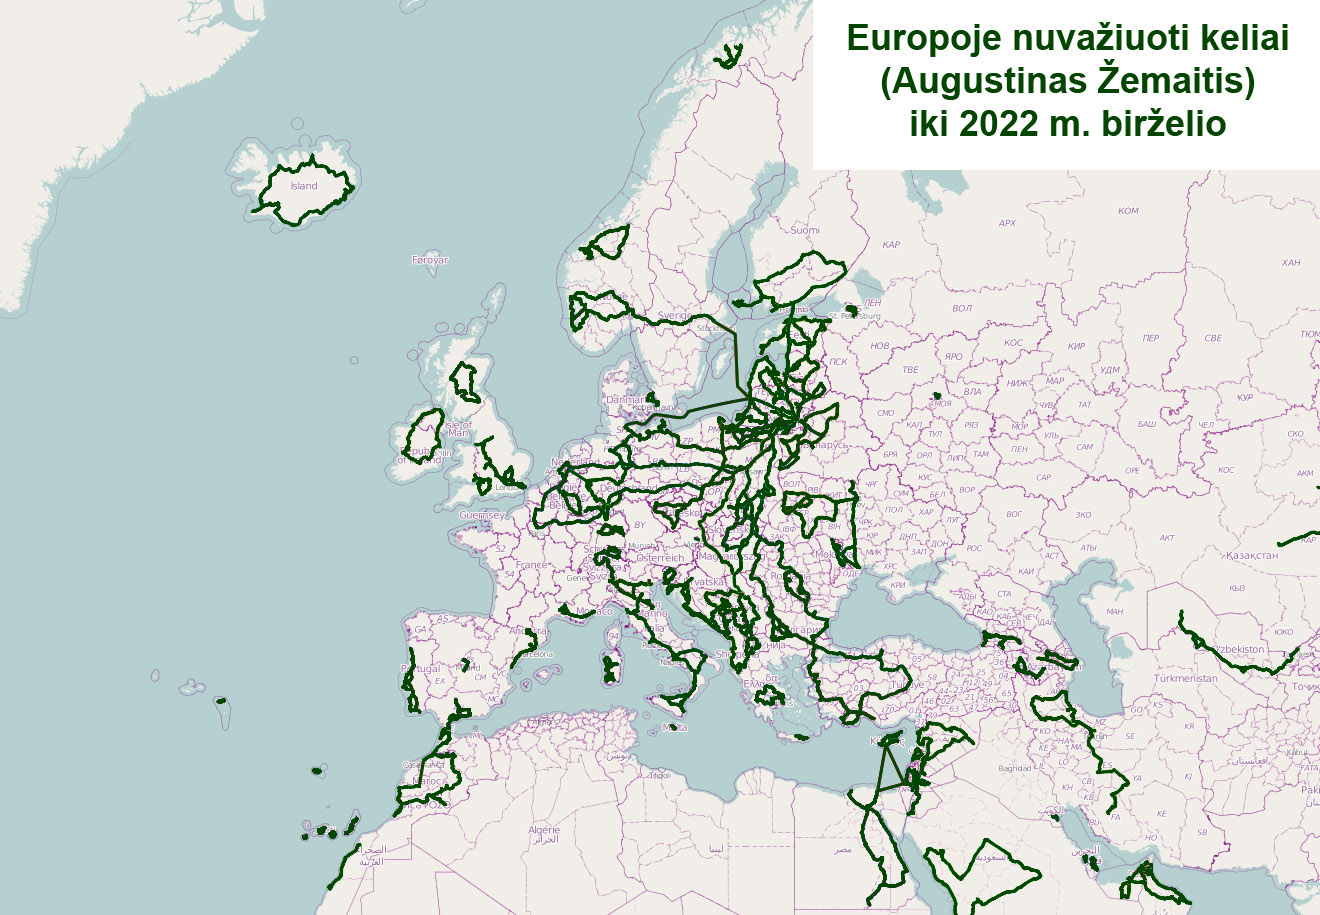 Mano nuvažiuotų ir nuplauktų kelių Europoje žemėlapis, sudarytas aukščiau aprašytu būdu (iki 2022 m. birželio)